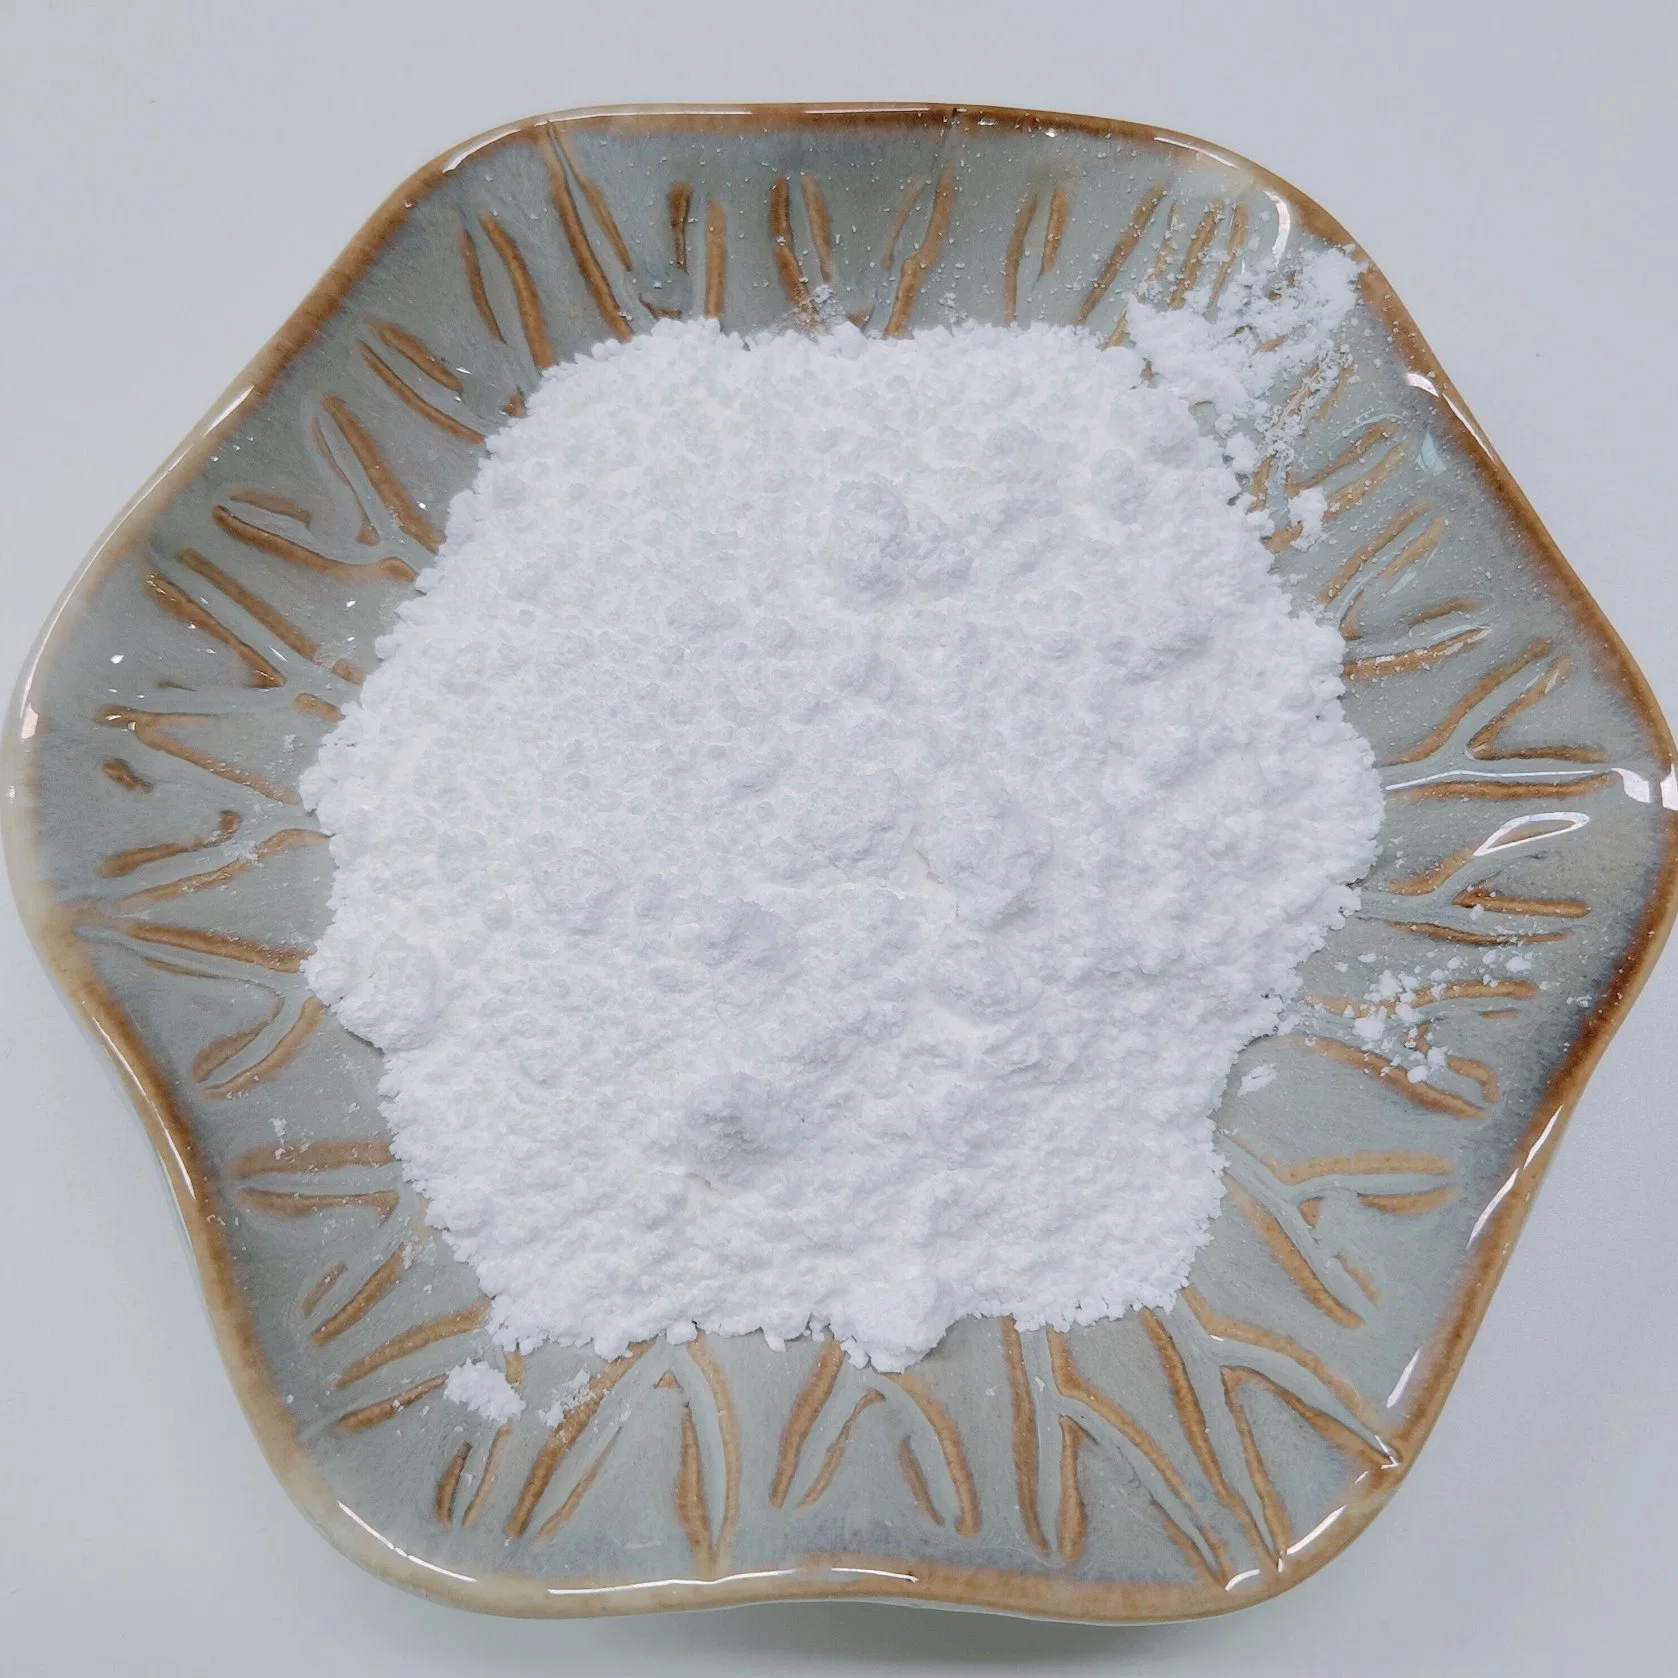 NSF-GMP - matérias-primas farmacêuticas Bulk Drug Azithromycin